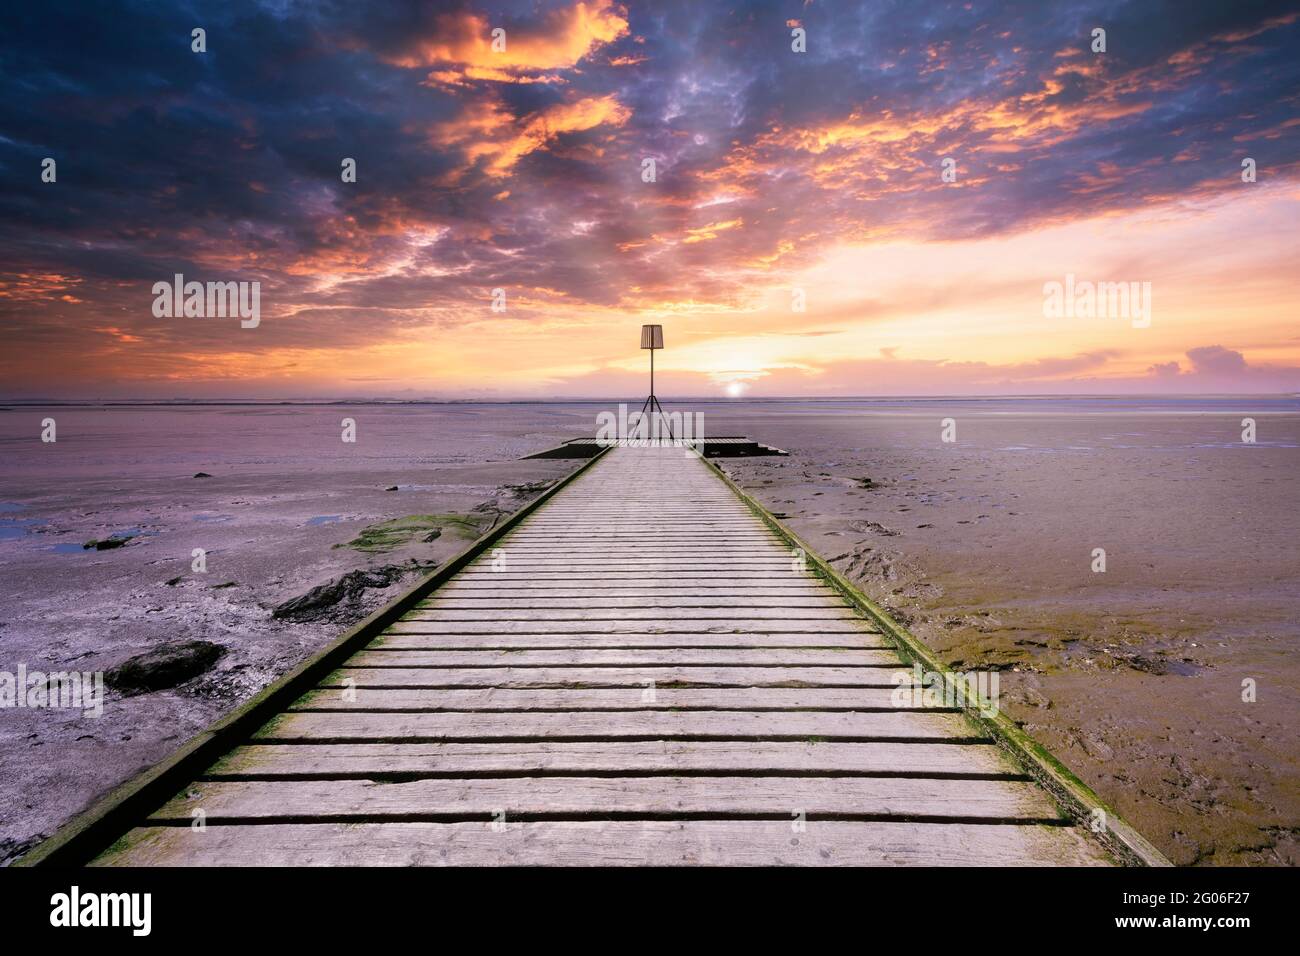 Le tavole di legno di un molo a Lytham in Lancashire, Regno Unito, si estendono sulla spiaggia di sabbia come il sole tramonta creando un cielo drammatico Foto Stock